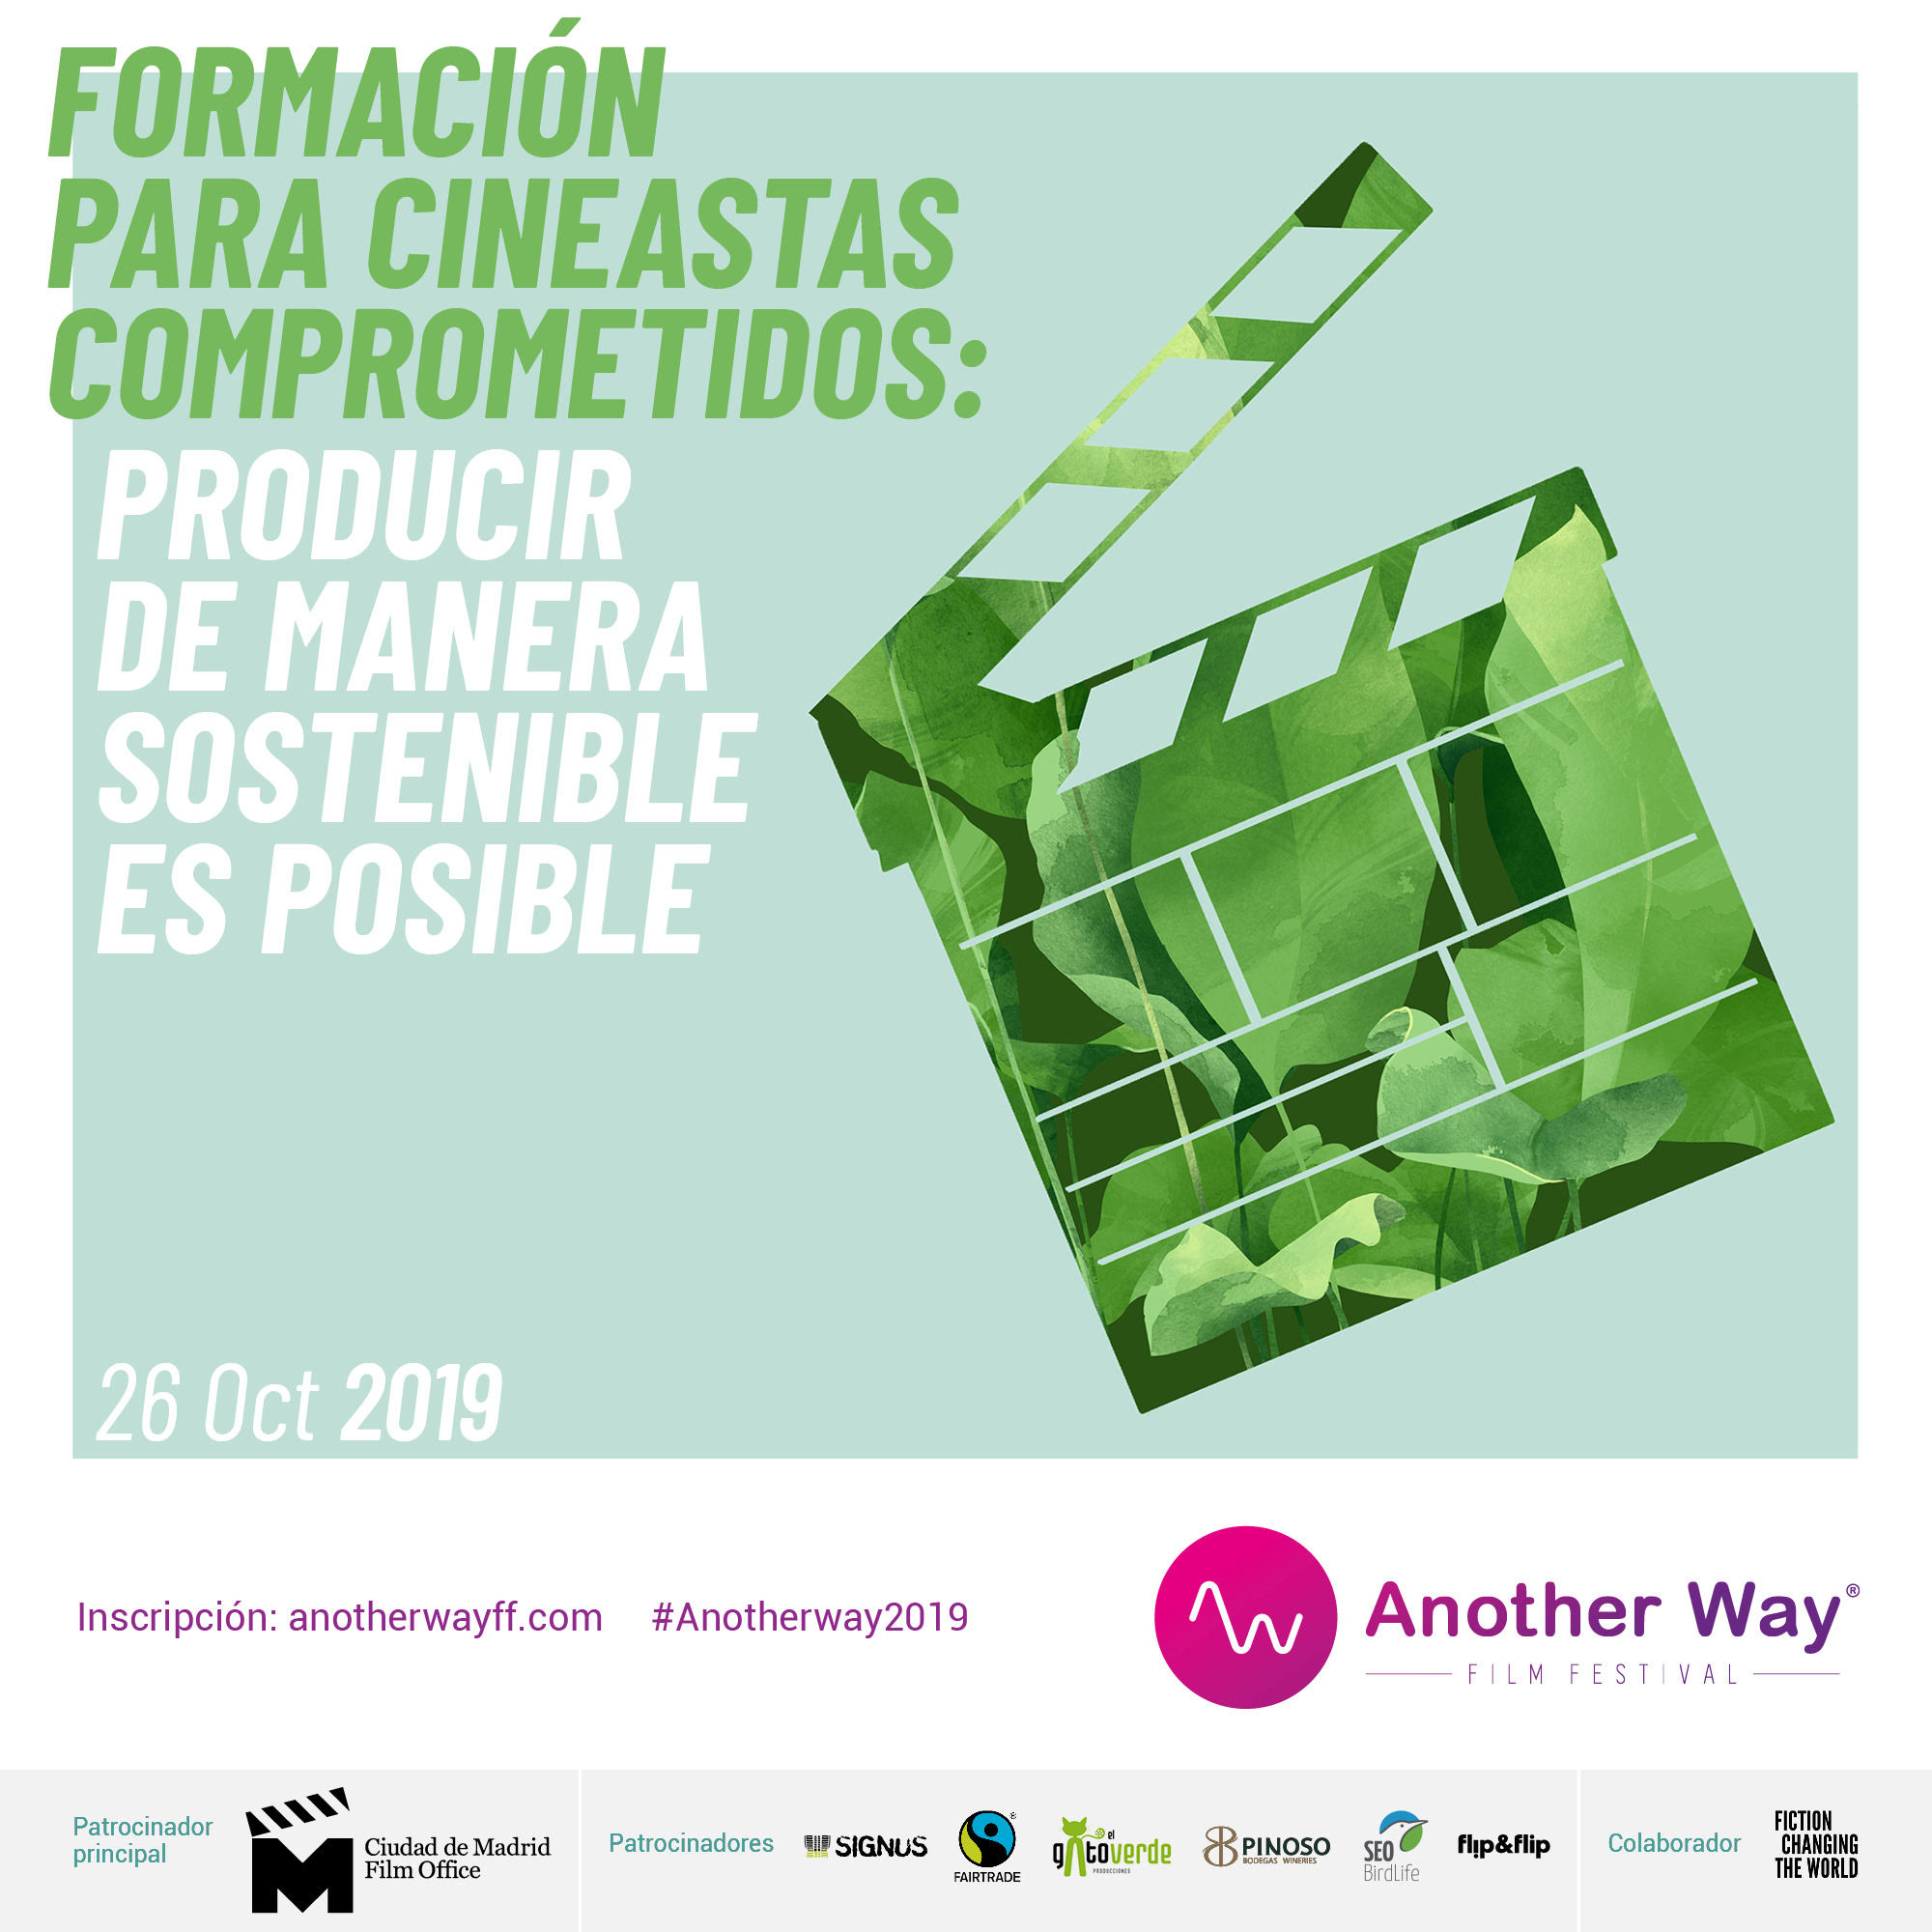 Another Way Film Festival y Ciudad de Madrid Film Office celebran la formación para cineastas "Producir de manera sostenible es posible"